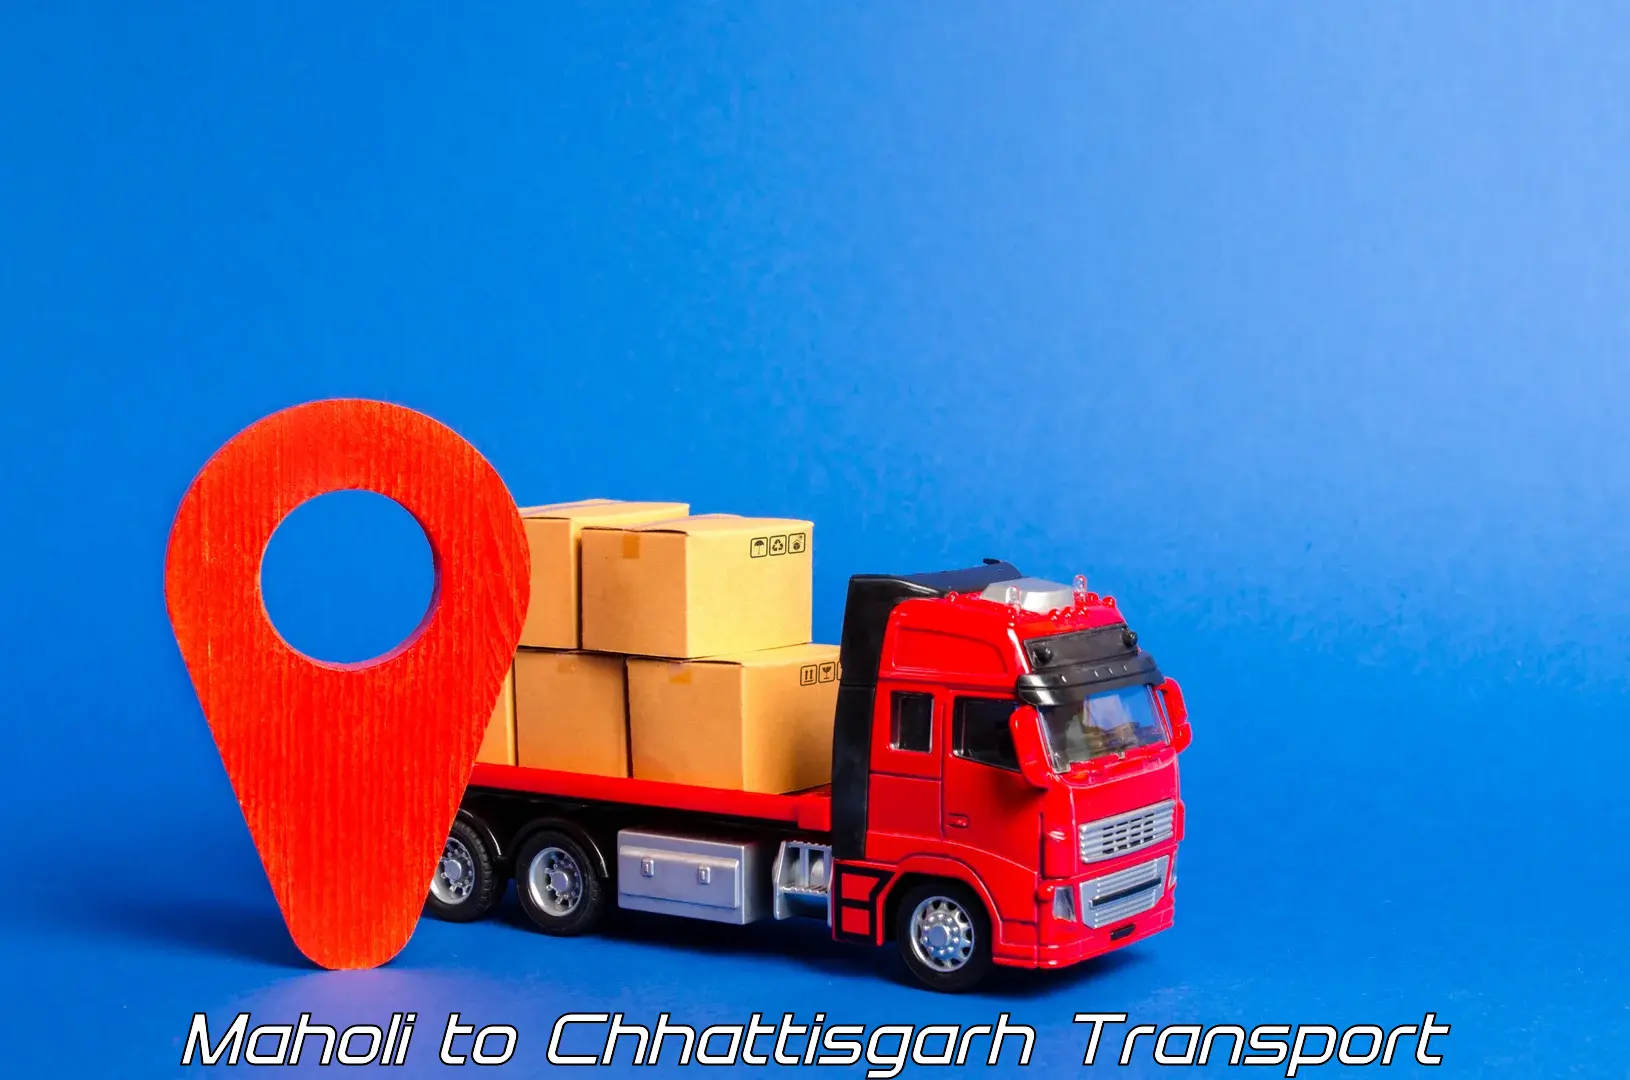 Container transport service Maholi to Chhattisgarh